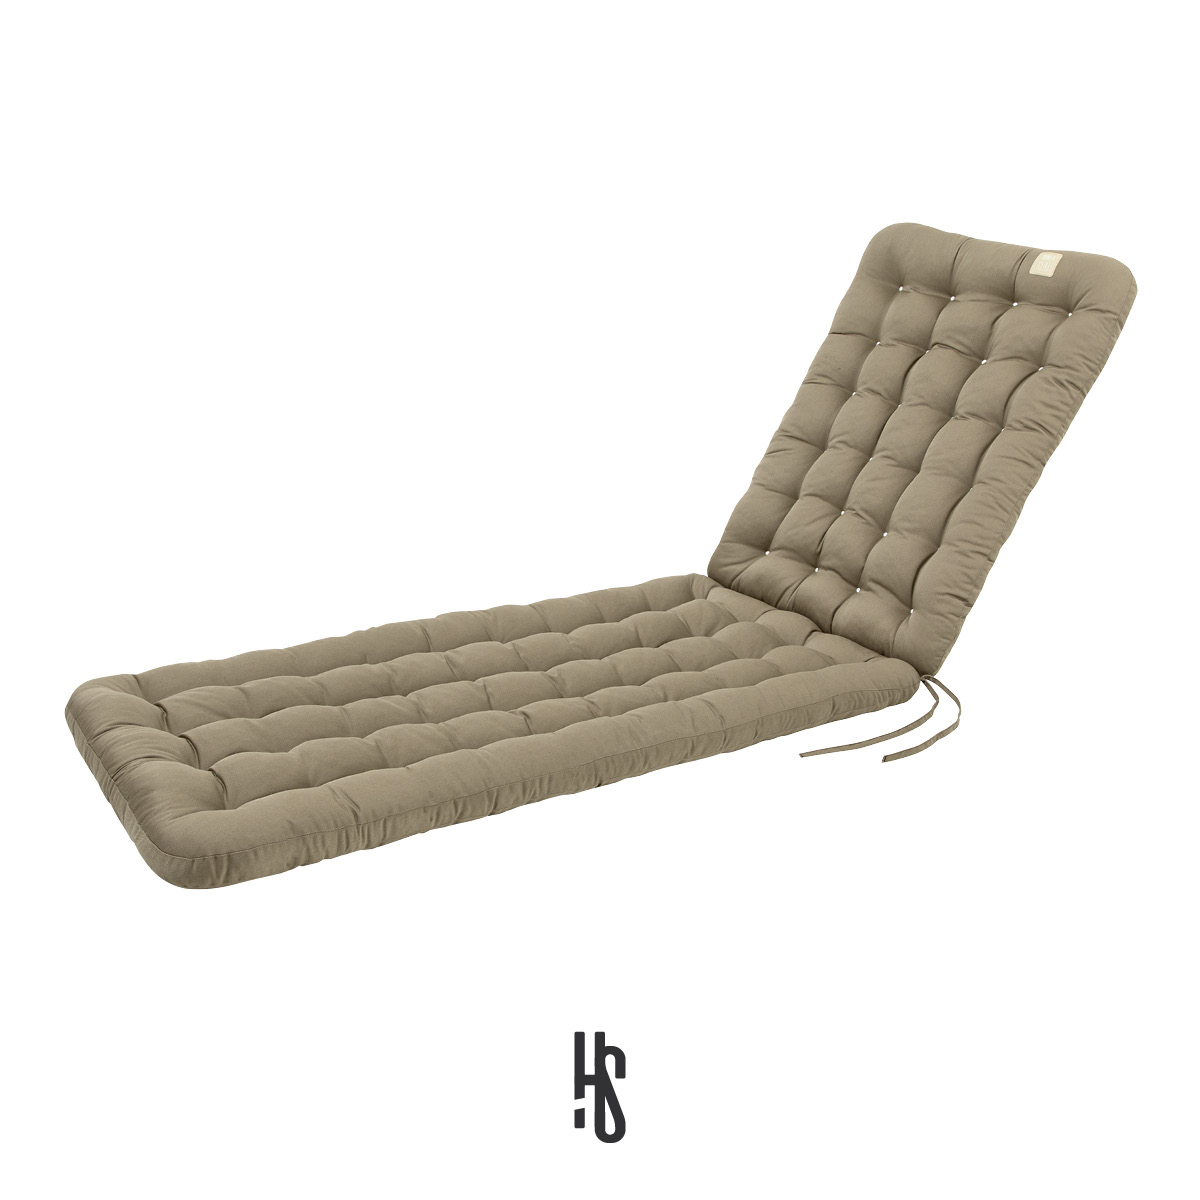 Auflage für Deckchair / Liegestuhl / Relaxsessel mit Premium-Sitz-/Liegekomfort inkl. orthopädisches Outdoor Nackenkissen | HAVE A SEAT Living